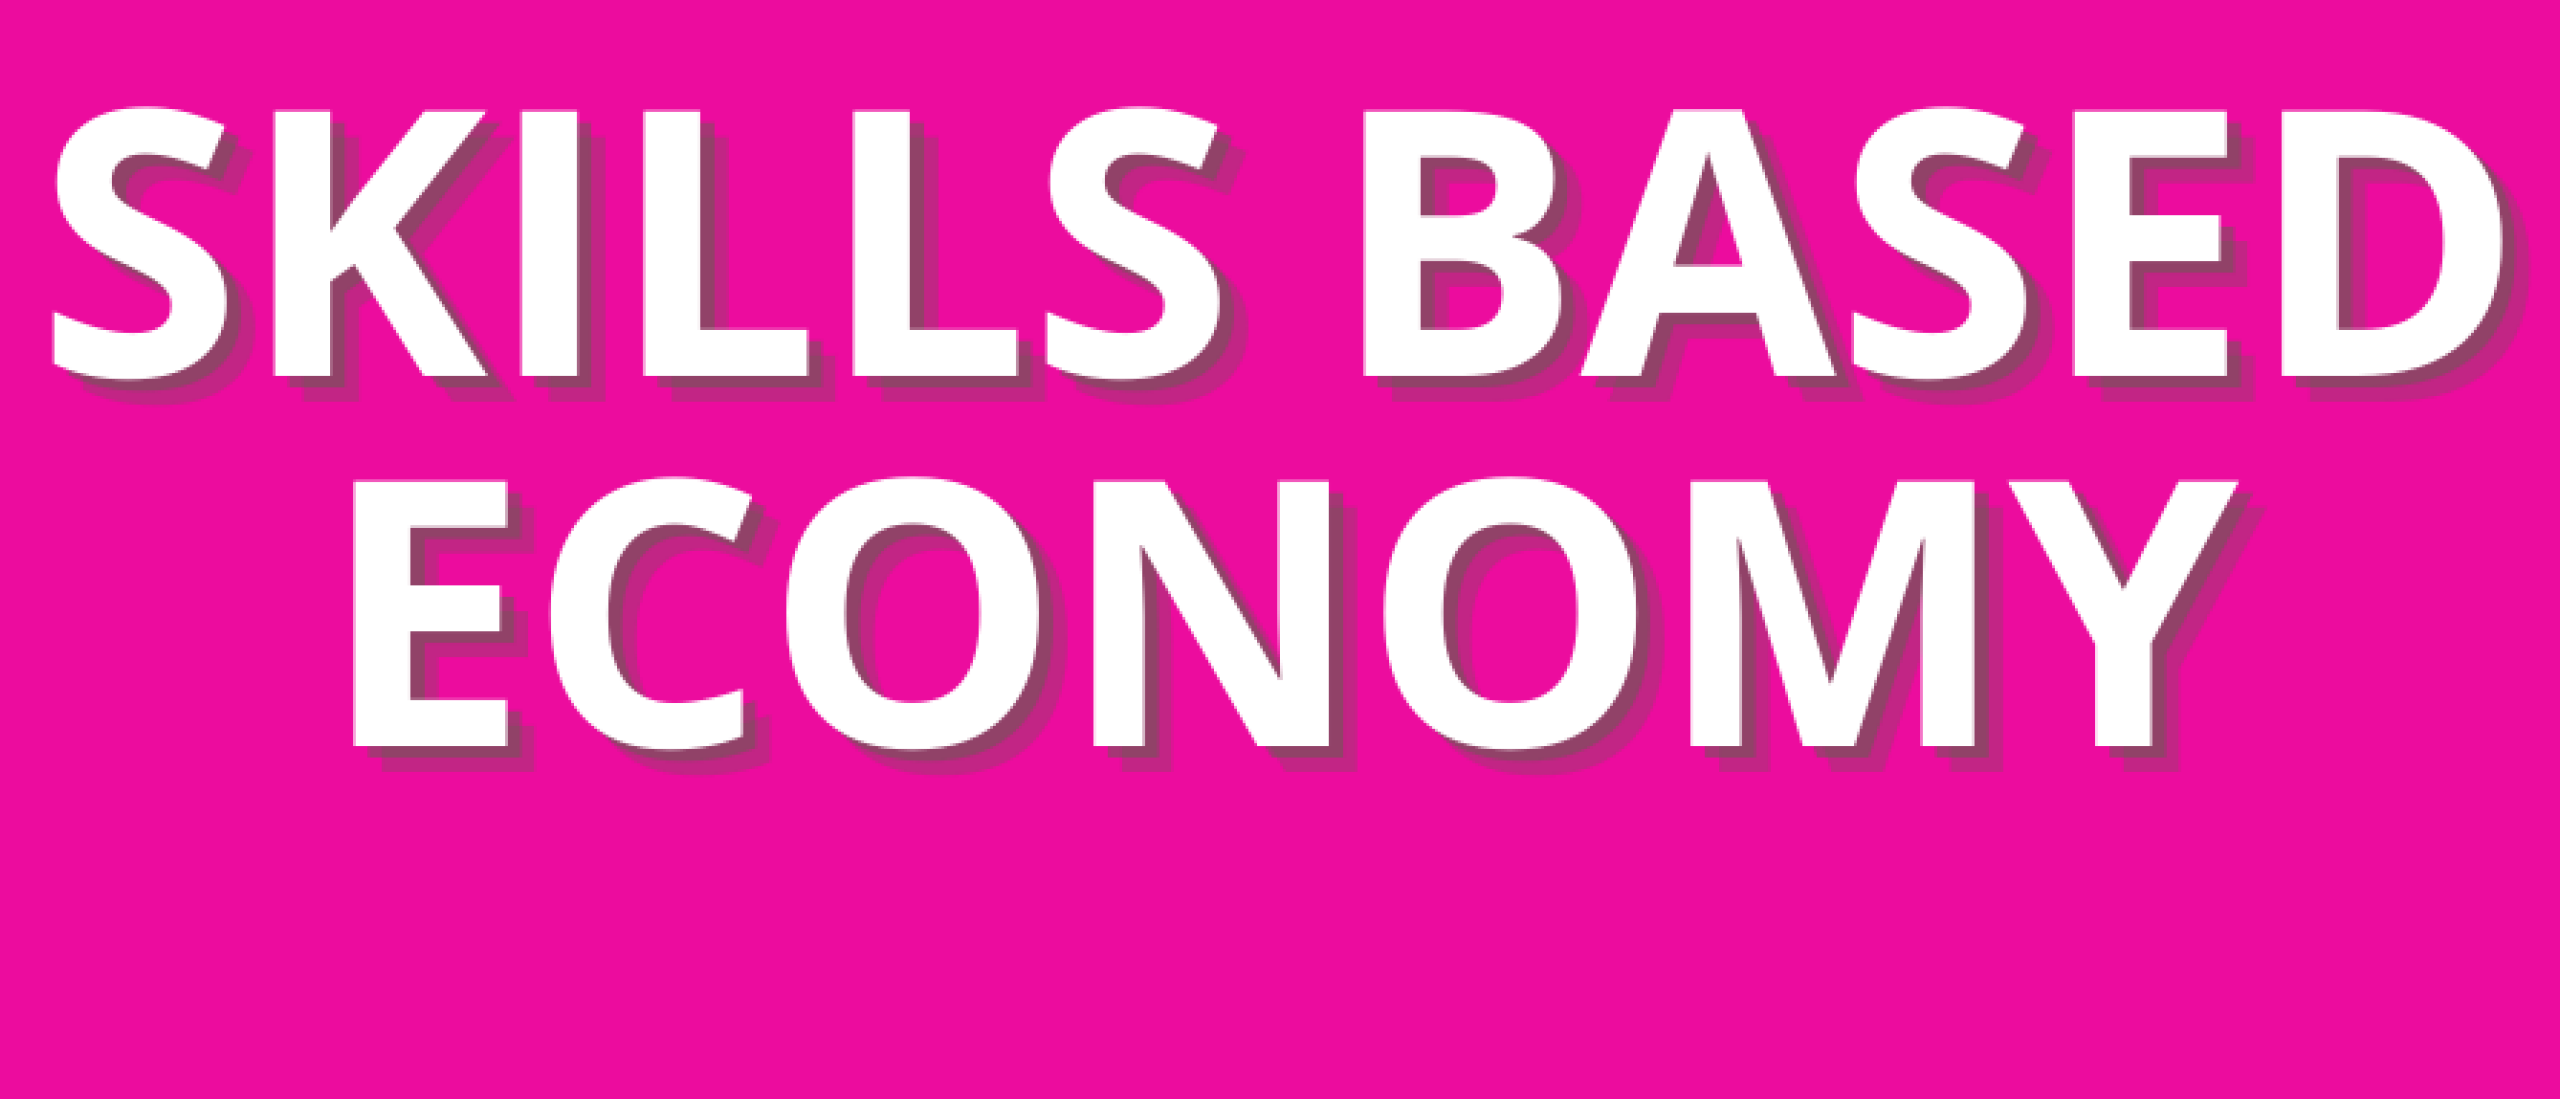 Skills based economy